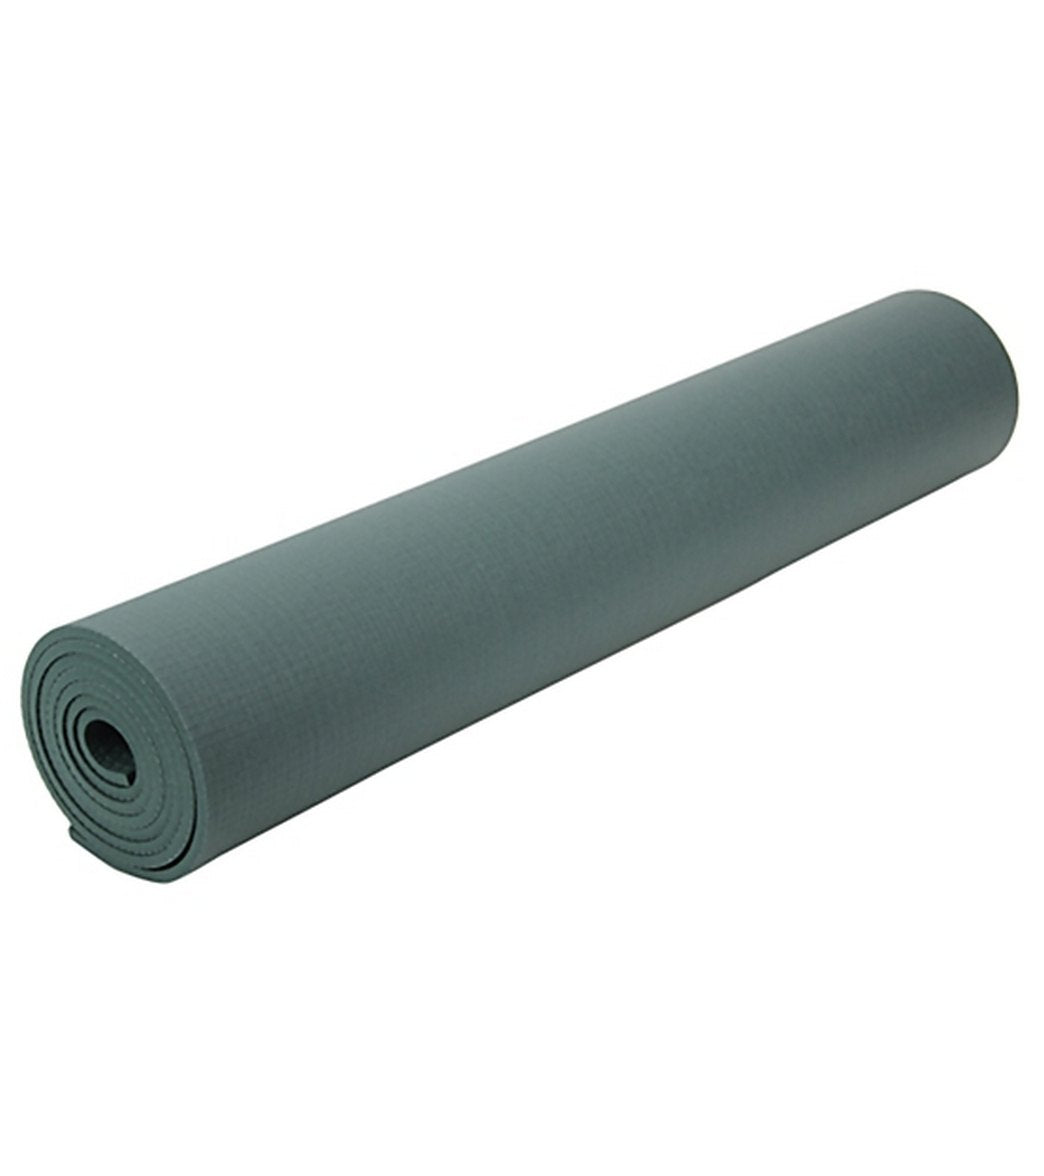 Manduka Pro Long Yoga Mat 85 6mm Extra